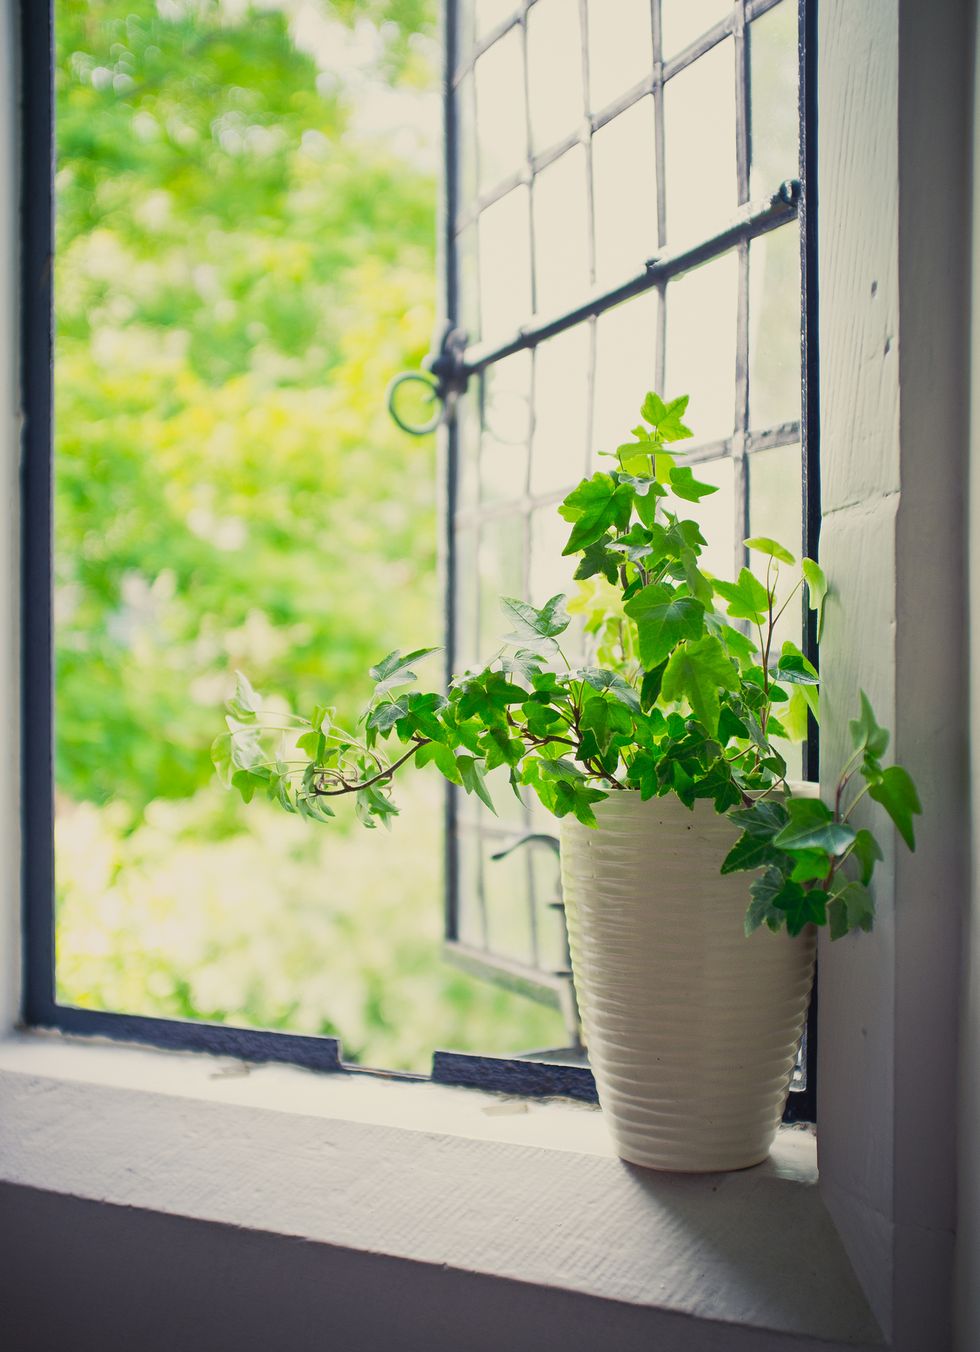 Green Ivy plant sat by open leaded window